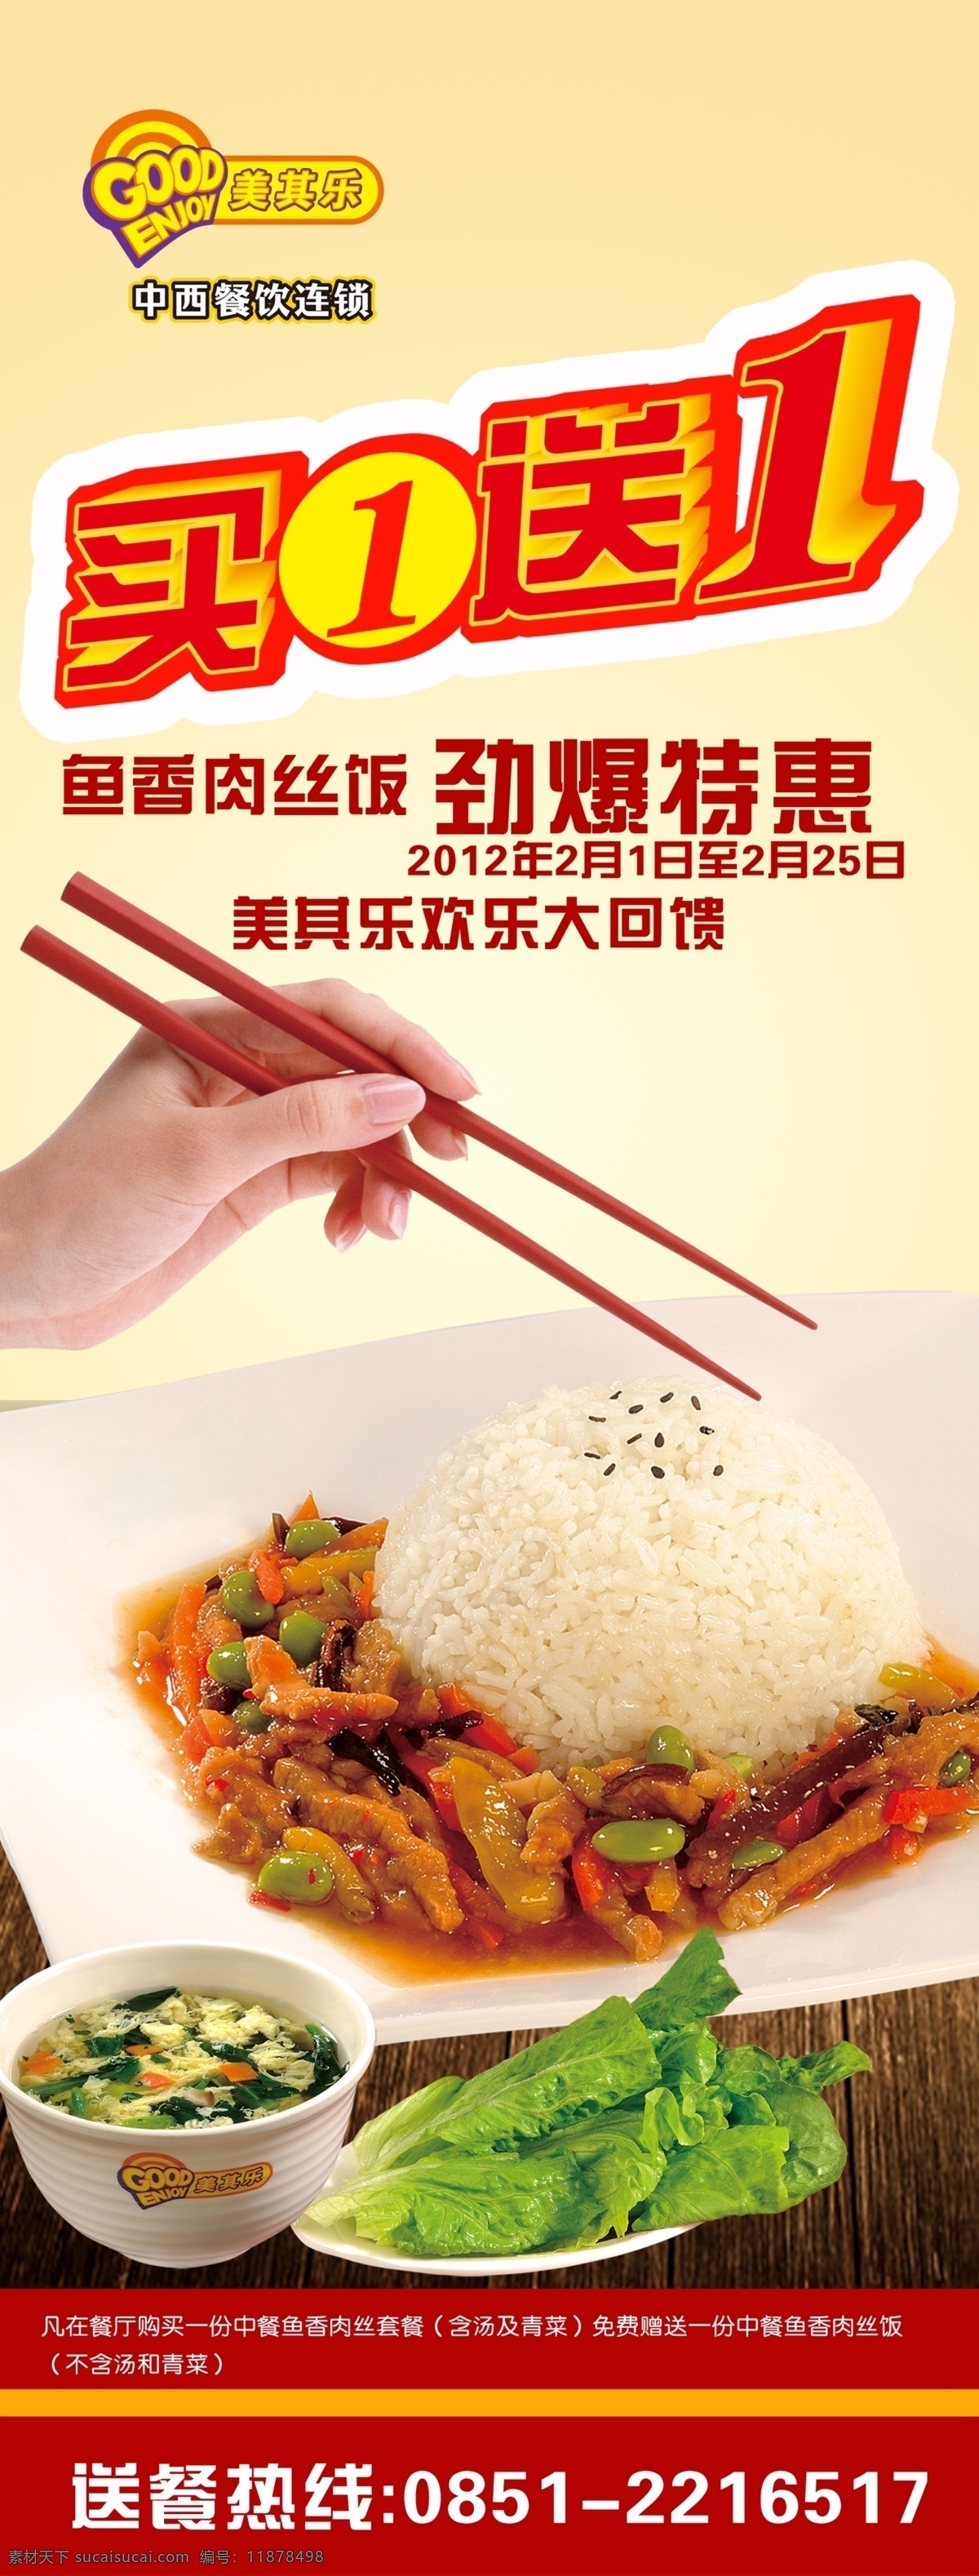 鱼香肉丝饭 汤 青菜 手 筷子 米饭 买一送一 优惠活动 送餐电话 x展架 海报 食物 广告设计模板 源文件